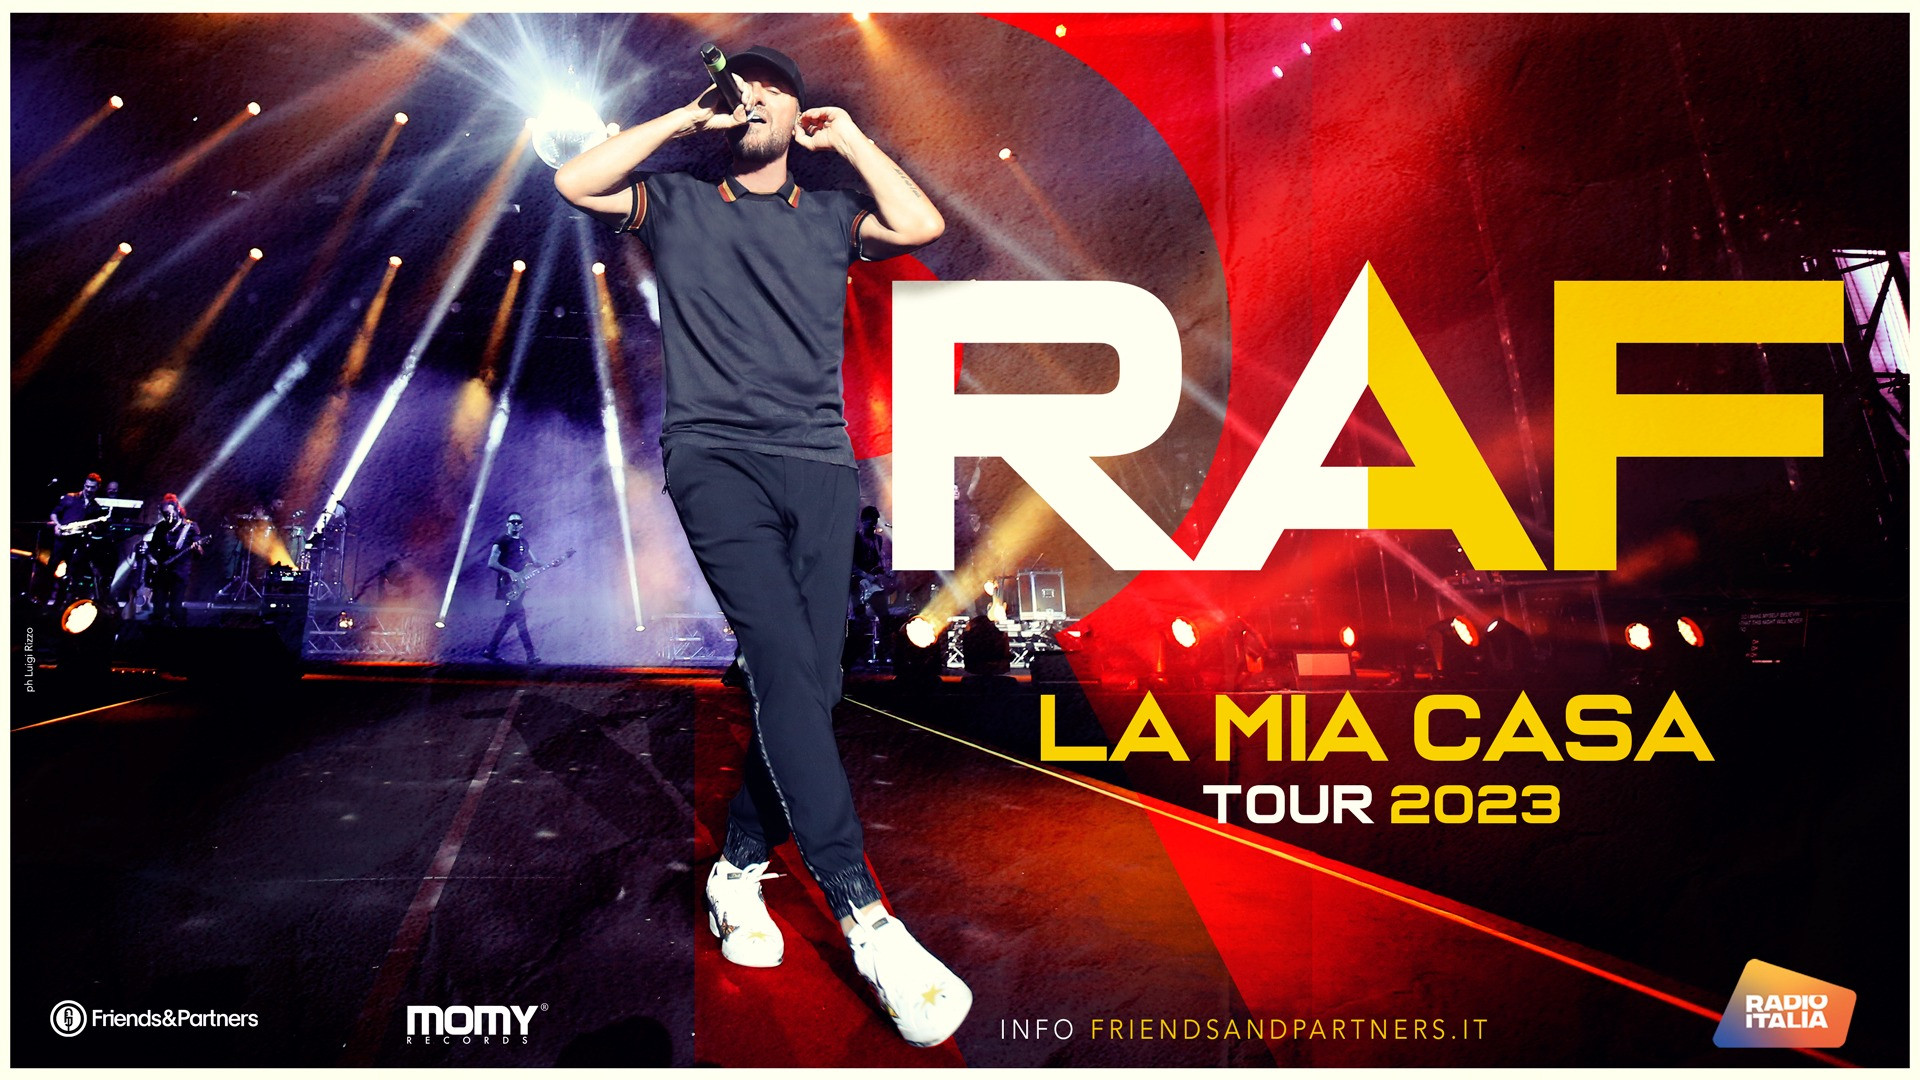 LA MIA CASA TOUR 2023 raf